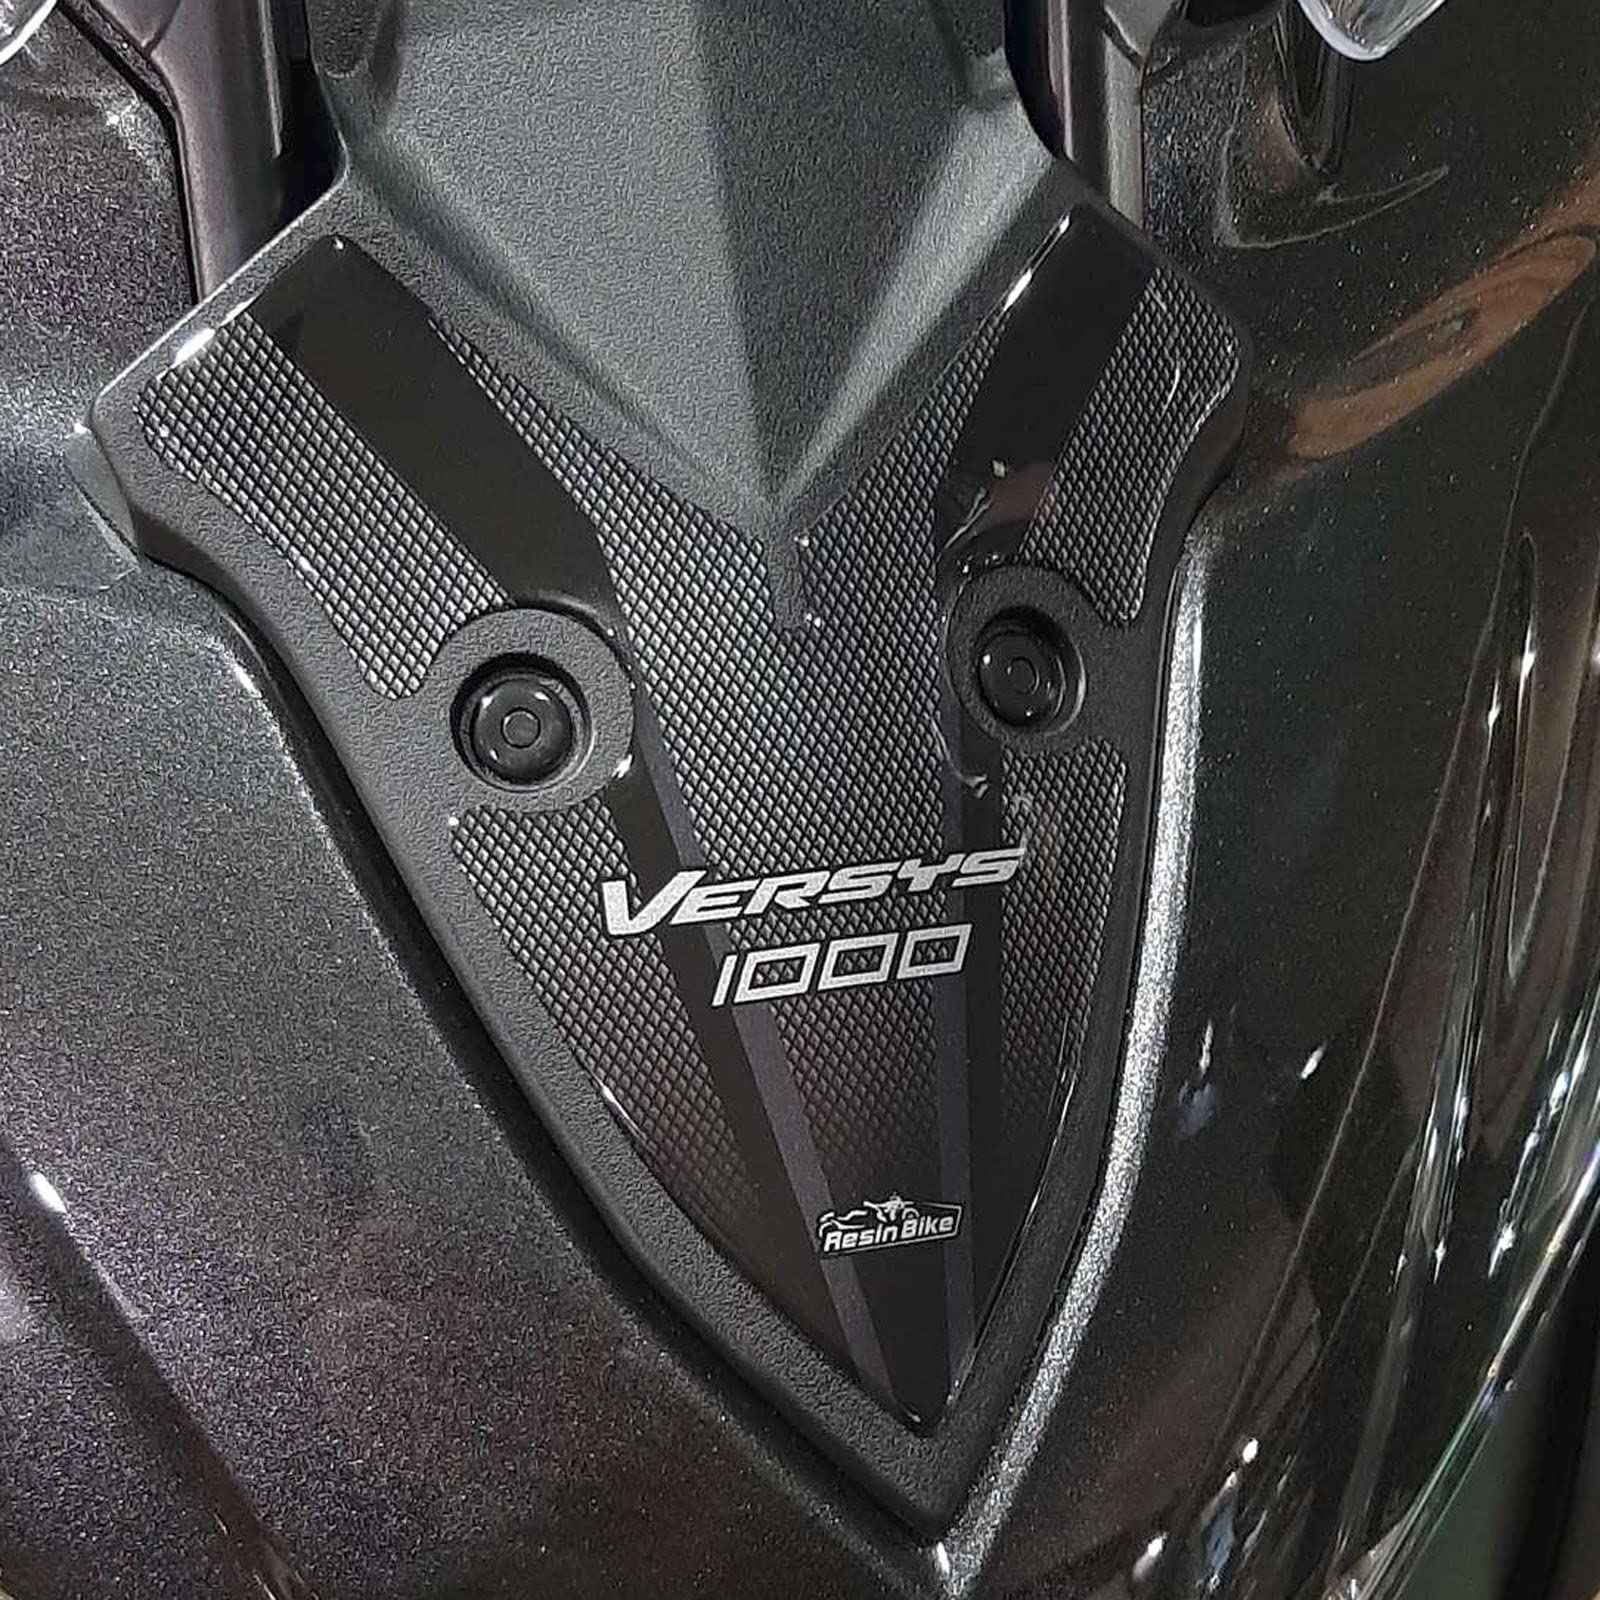 Resin Bike Aufkleber für Motorrad Kompatibel mit Kawasaki Versys 1000 Grand Tour 2019-2020. Frontschutzgitter vor Stößen und Kratzern. 3D-Harzklebstoff – Stickers - Made in Italy von Resin Bike